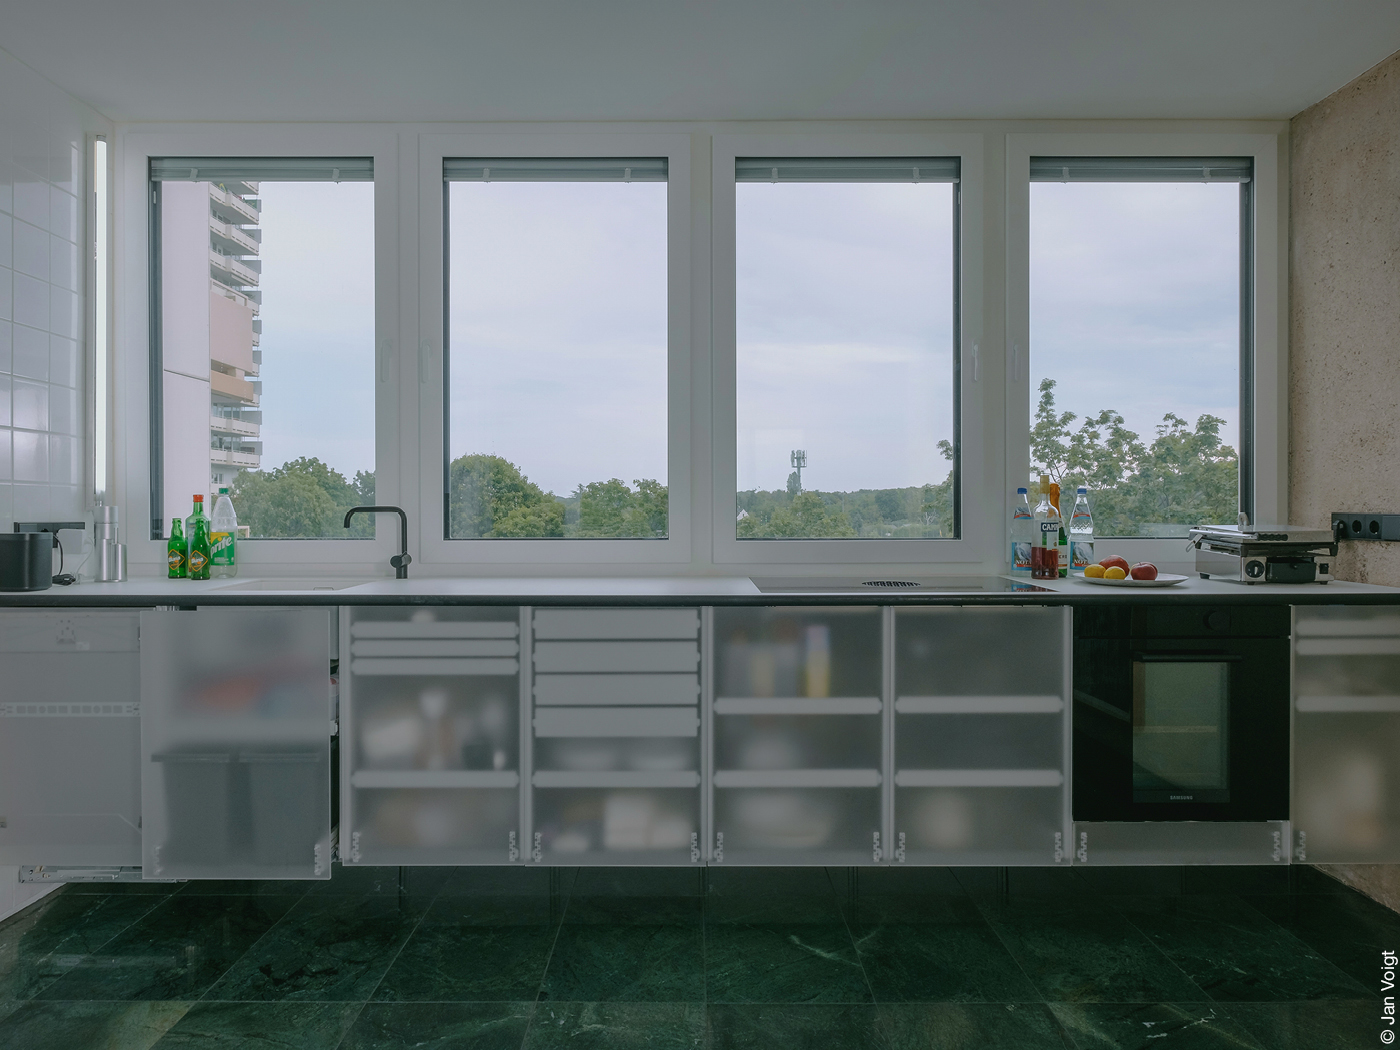 Moderne Küchenzeile mit Milchglas-Küchenschränken und einer breiten Fensterfront, durch die man auf Baumwipfel blickt.